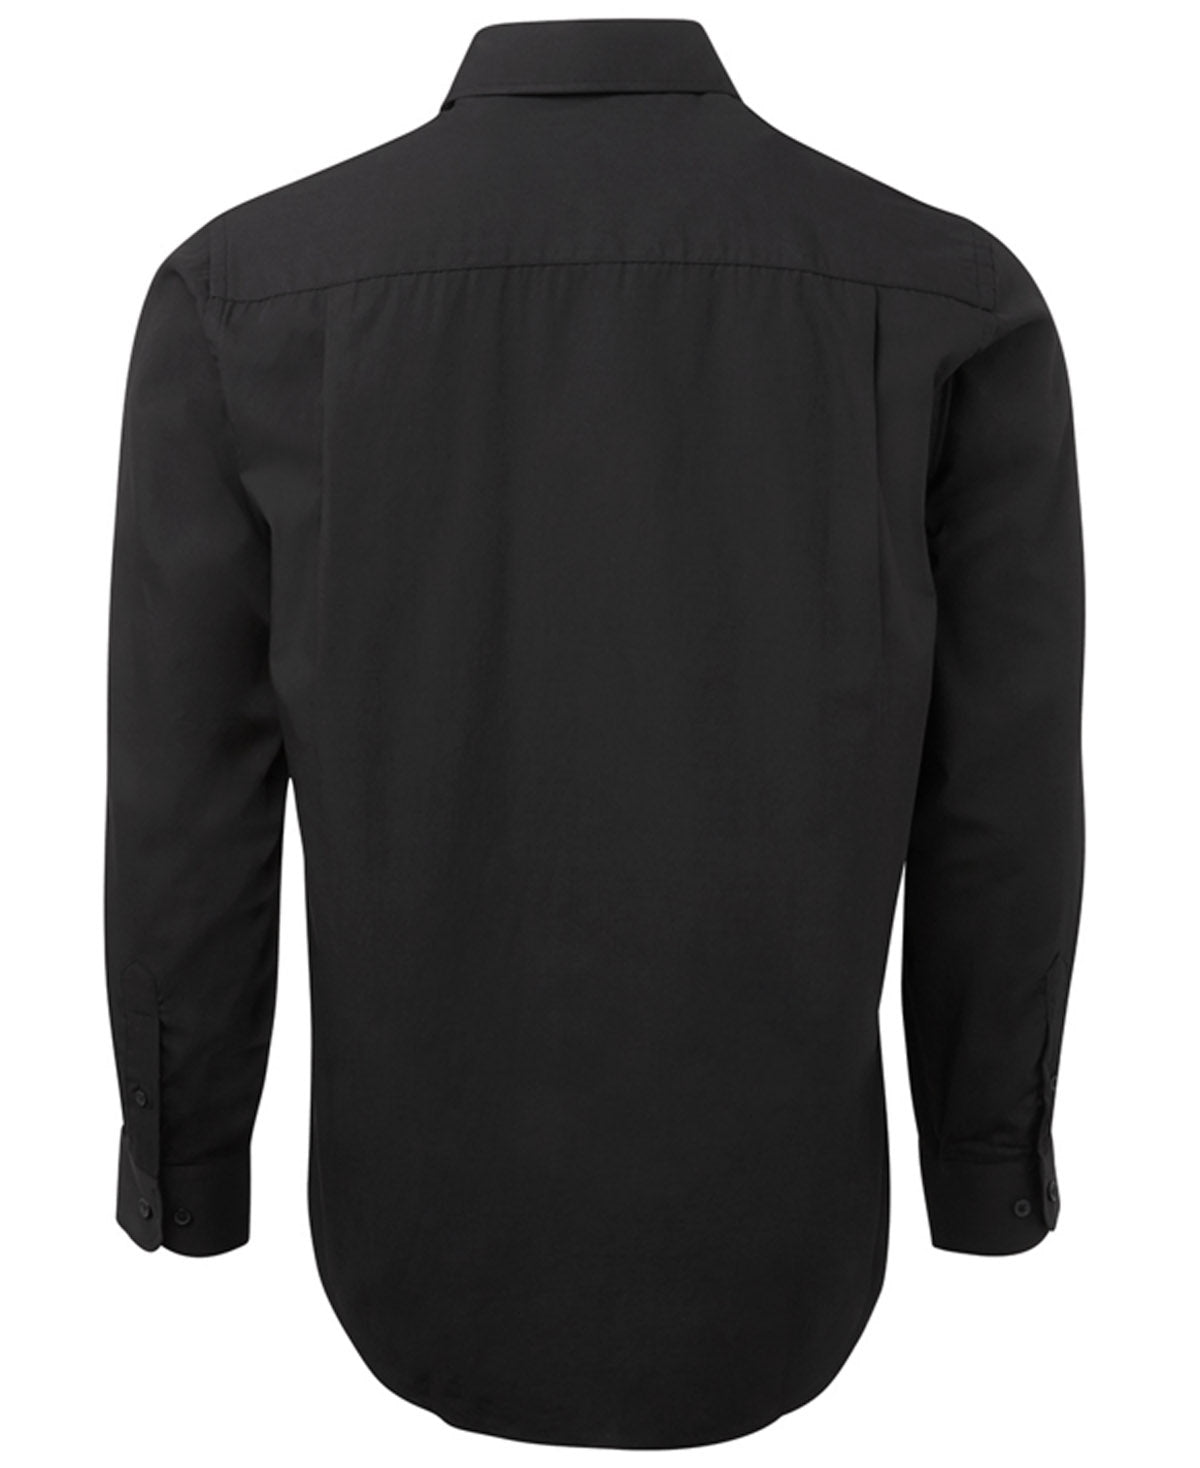 JBs Classic Poplin Short Sleeve Shirt Menswear Mature Stock Service by JBs Wear | The Bloke Shop